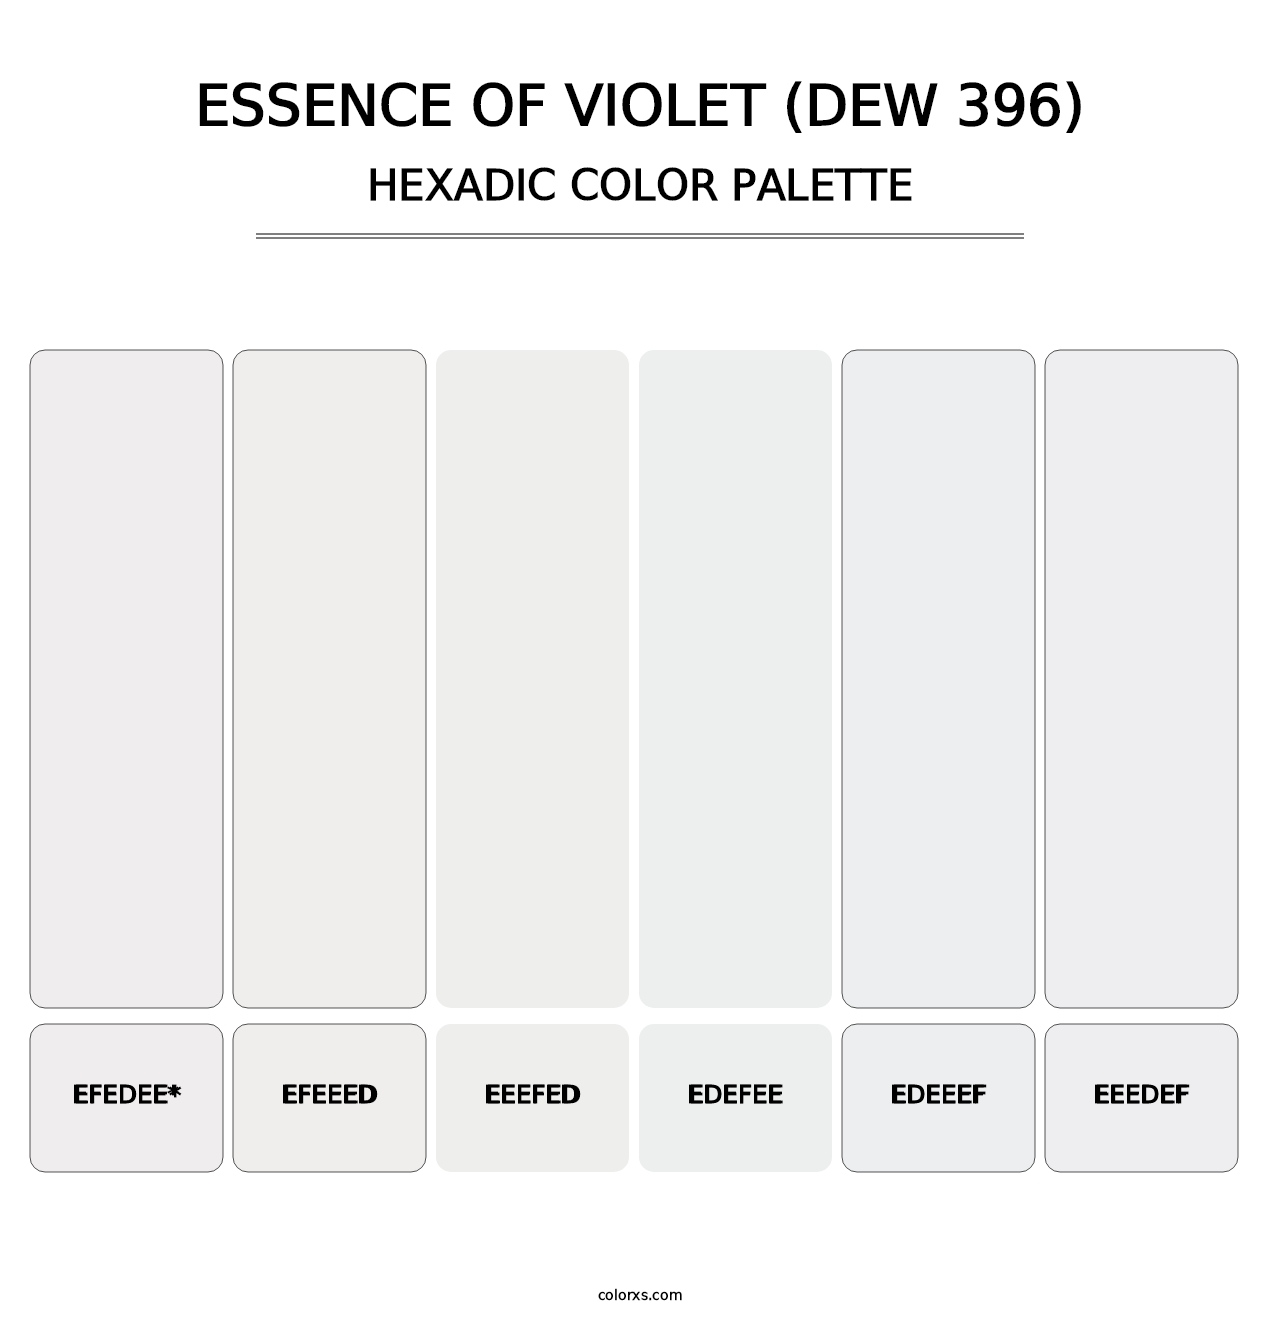 Essence of Violet (DEW 396) - Hexadic Color Palette